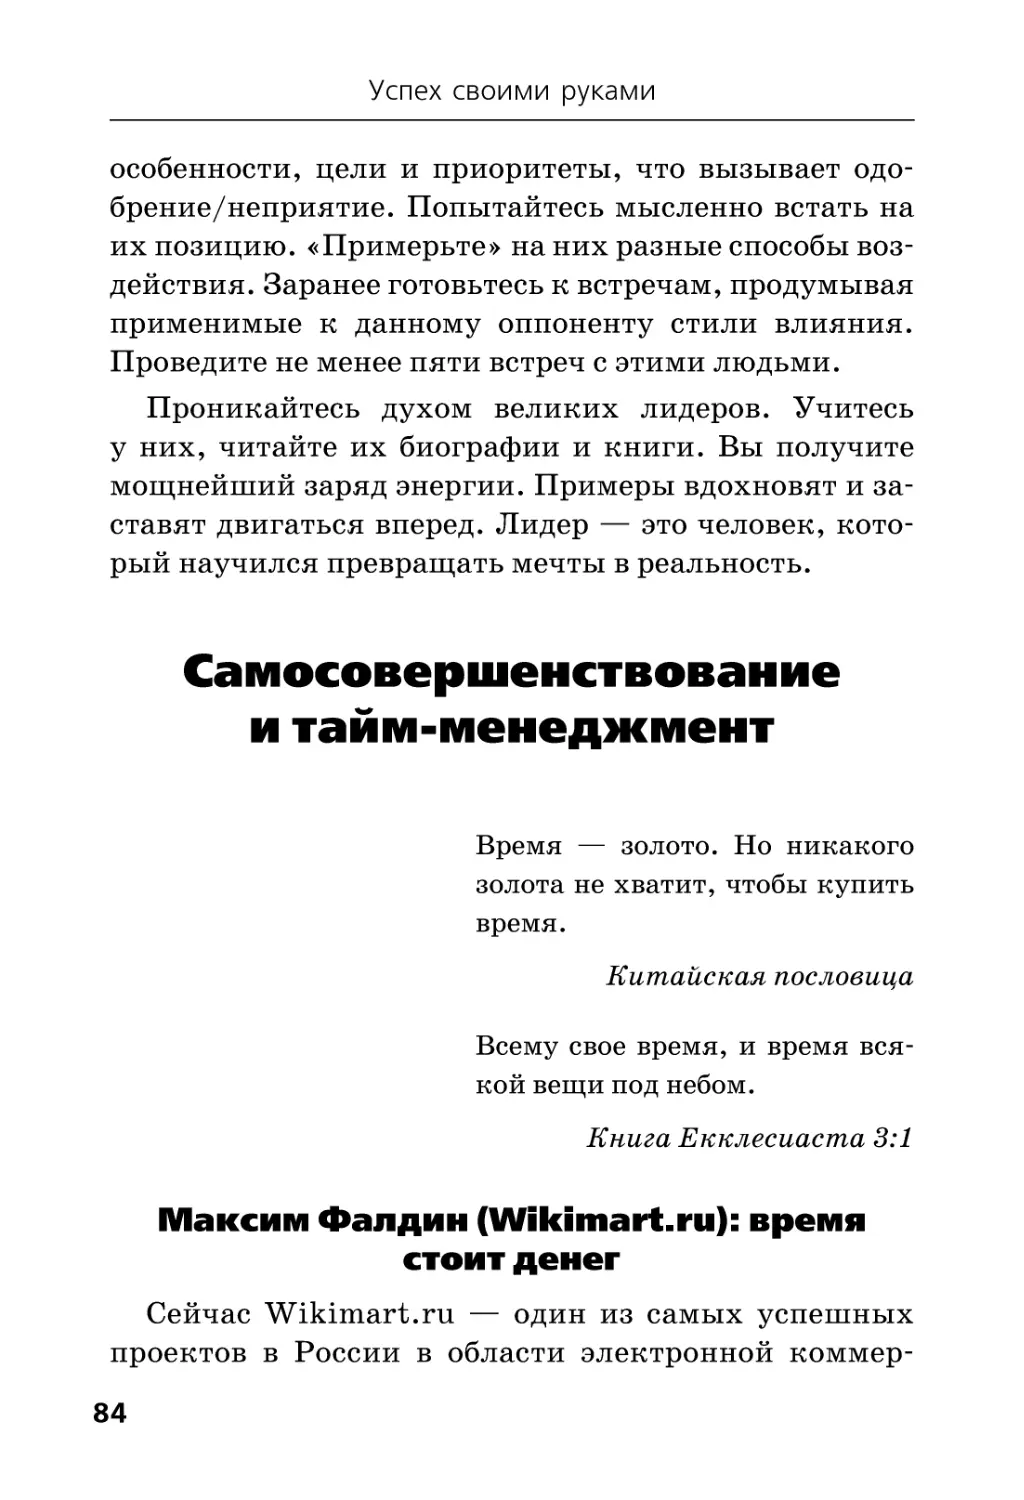 Самосовершенствование и тайм-менеджмент
Максим Фалдин (Wikimart.ru)